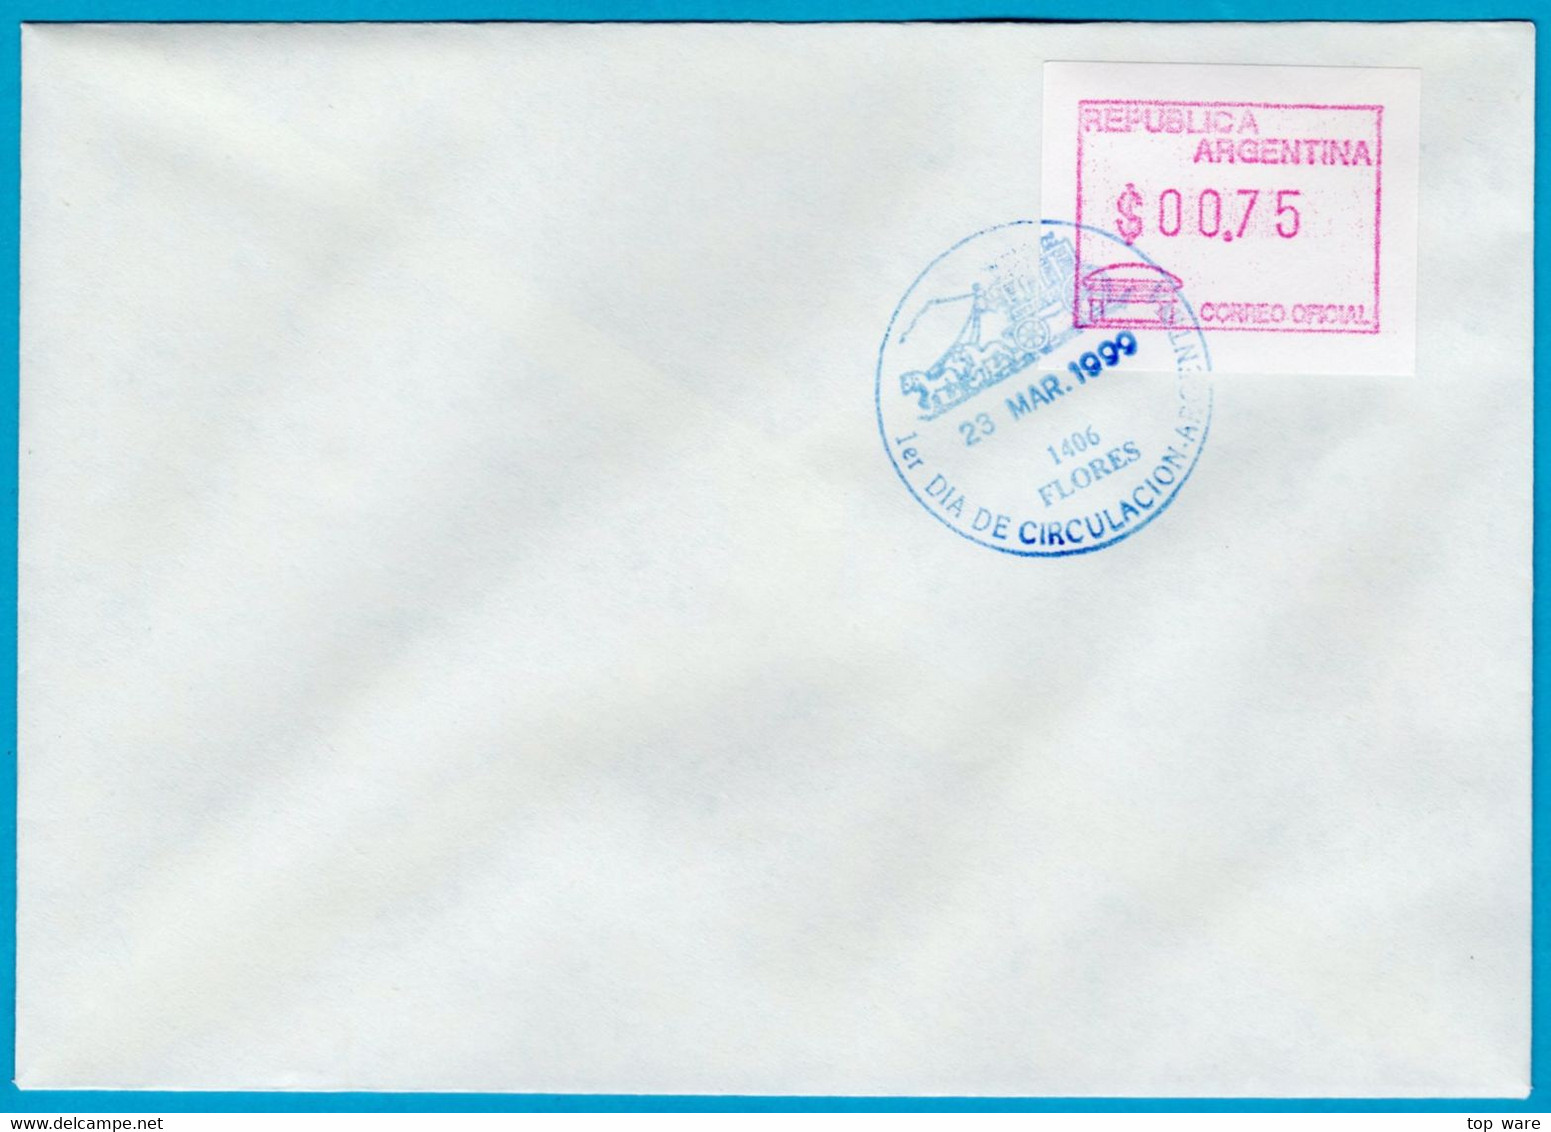 1999 Argentinien Argentina ATM 3 / $0,75 On FDC 23 MAR.1999 / FRAMA Automatenmarken Etiquetas Klüssendorf - Frankeervignetten (Frama)